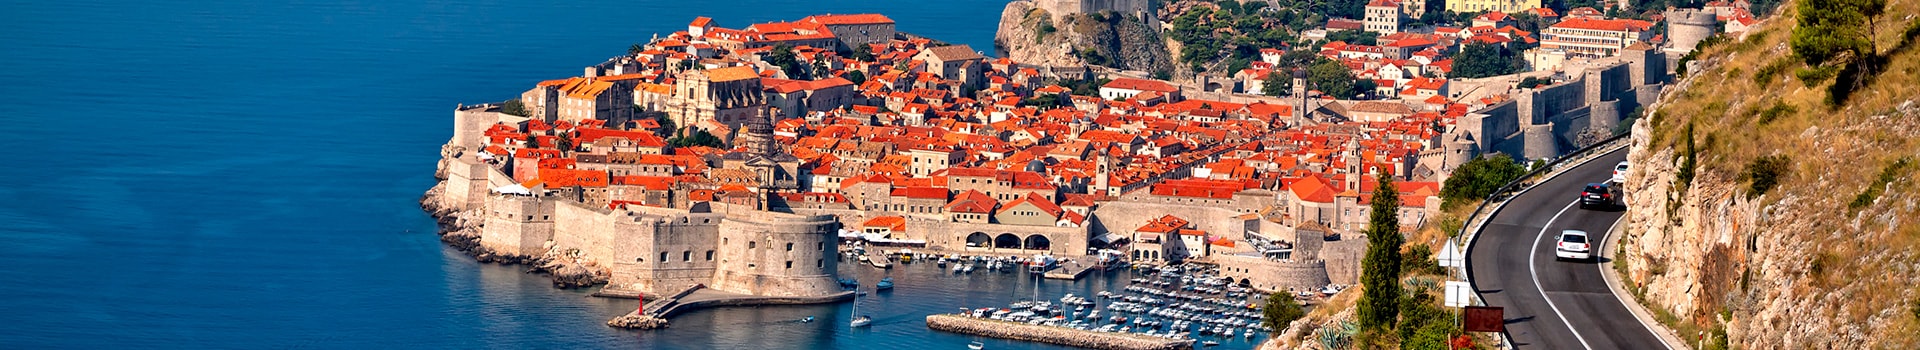 Lisbon - Dubrovnik